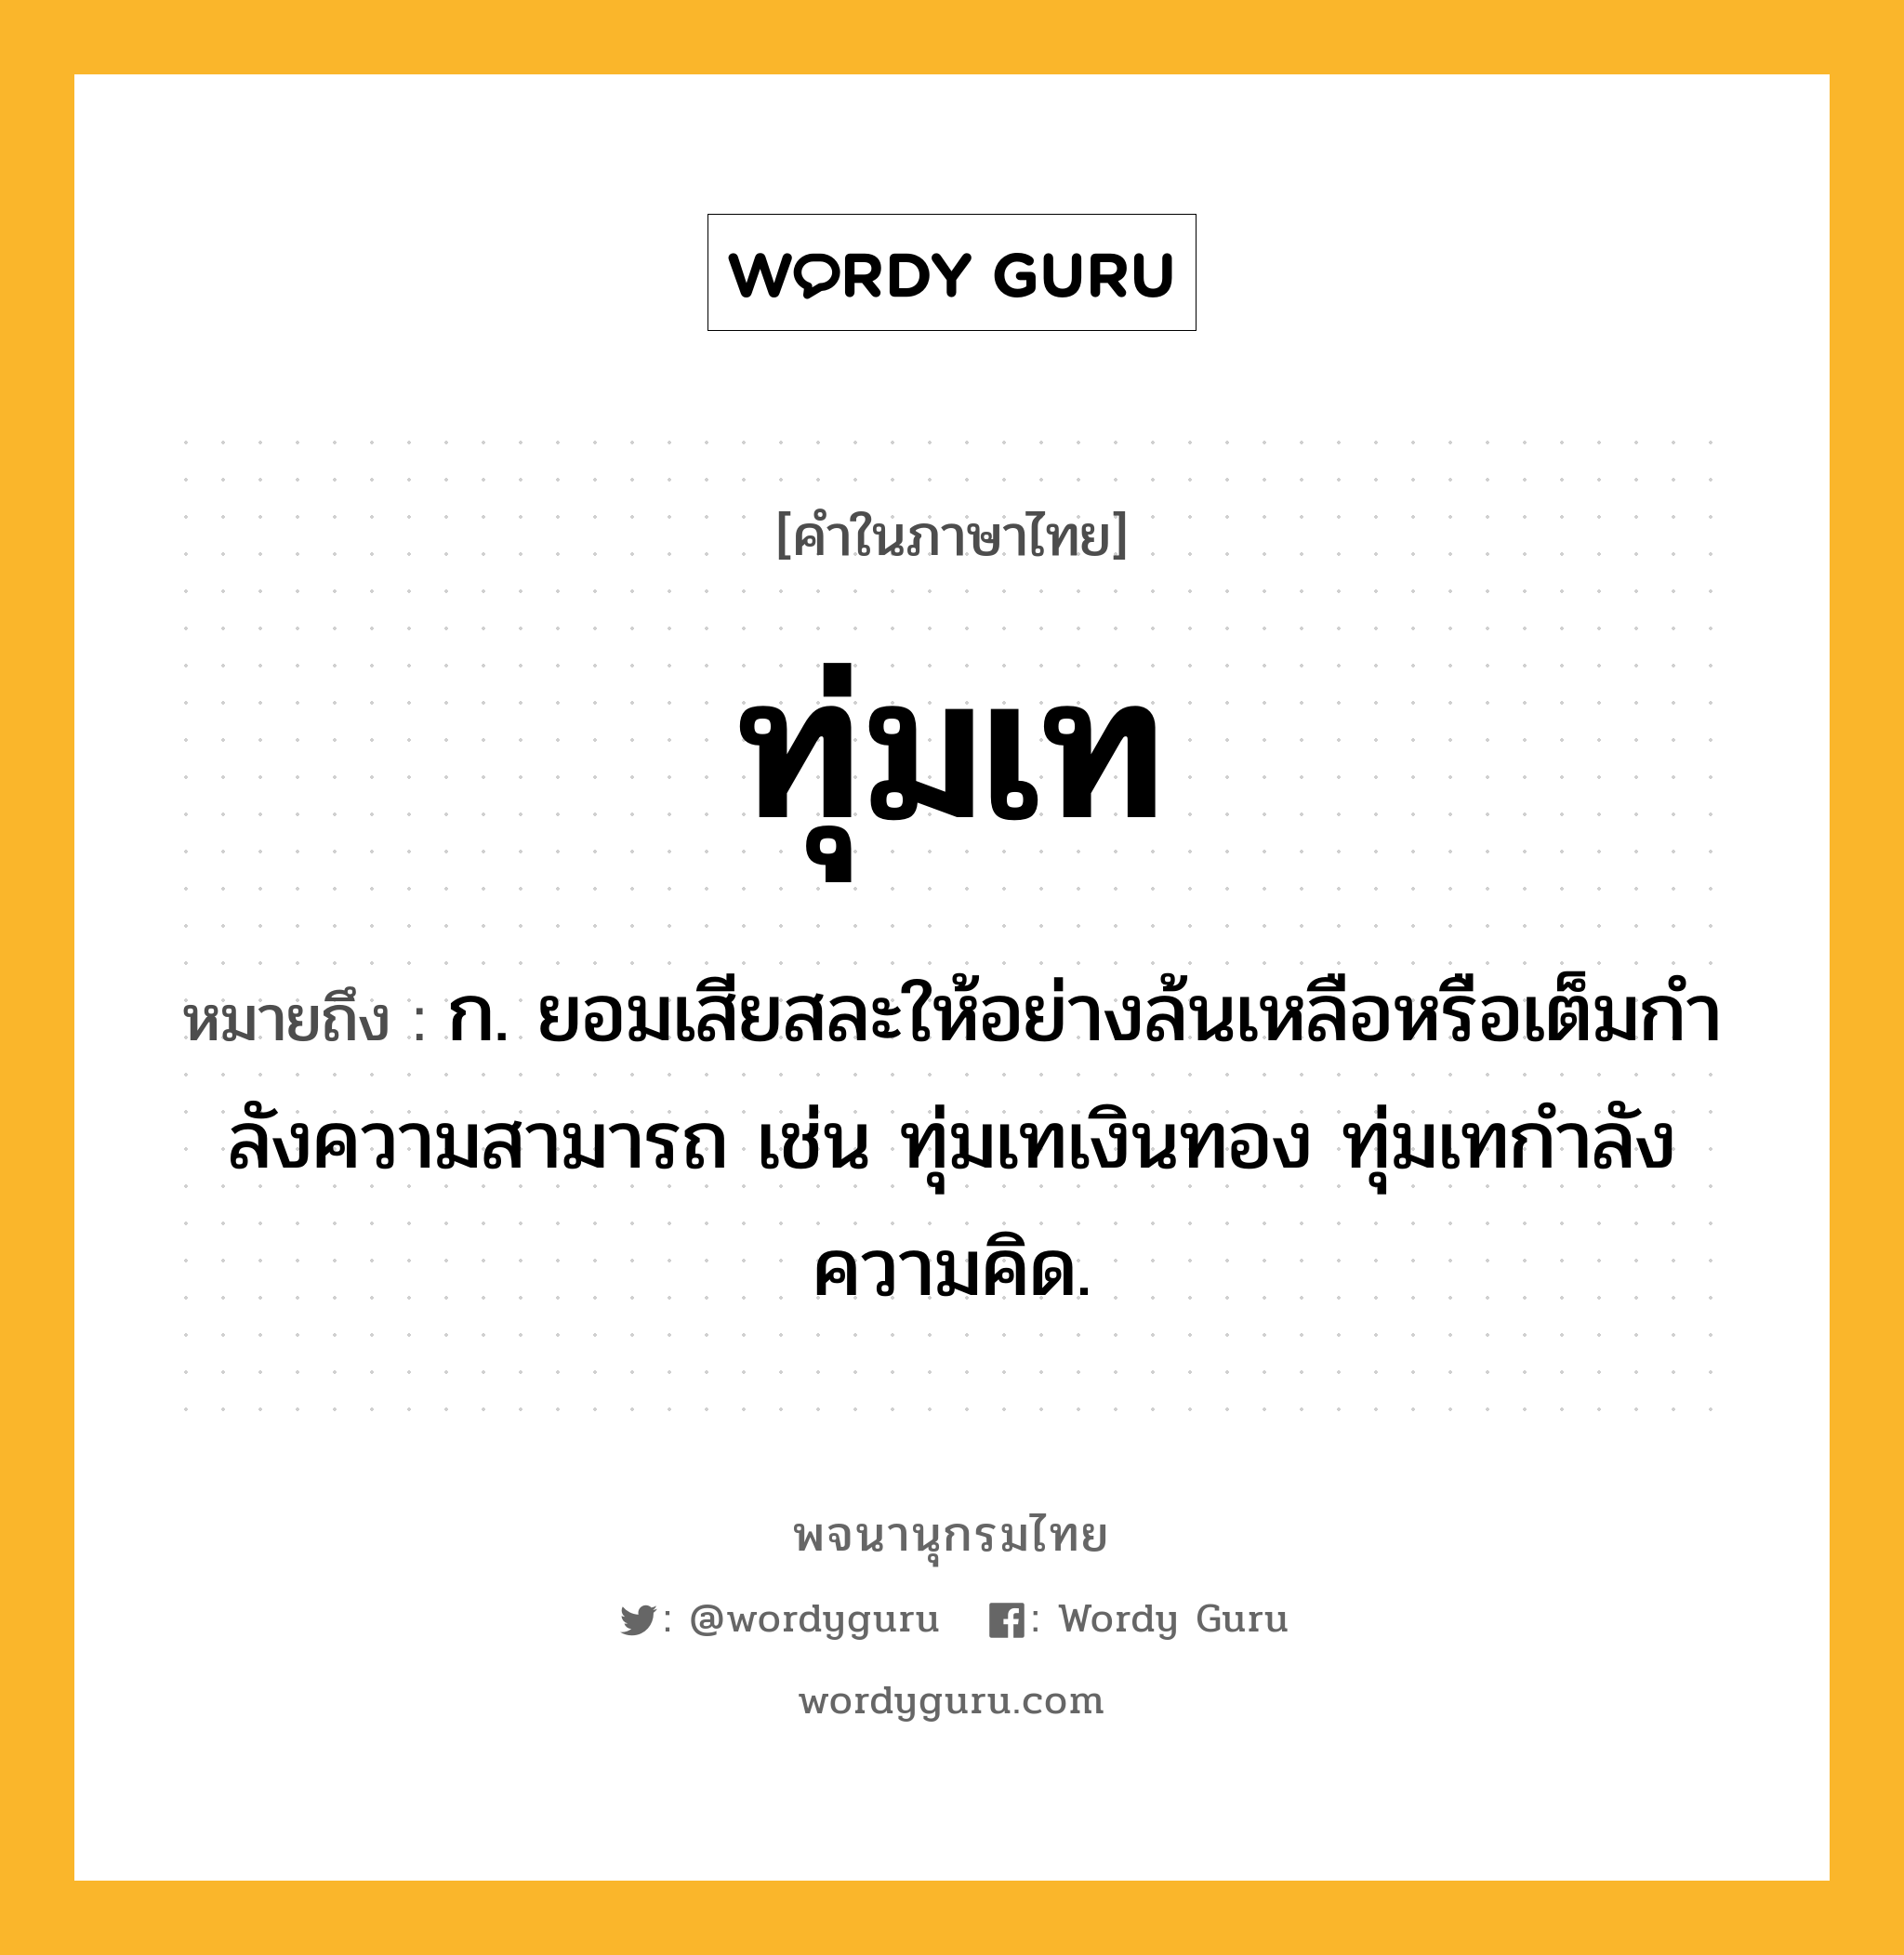 ทุ่มเท ความหมาย หมายถึงอะไร?, คำในภาษาไทย ทุ่มเท หมายถึง ก. ยอมเสียสละให้อย่างล้นเหลือหรือเต็มกําลังความสามารถ เช่น ทุ่มเทเงินทอง ทุ่มเทกําลังความคิด.